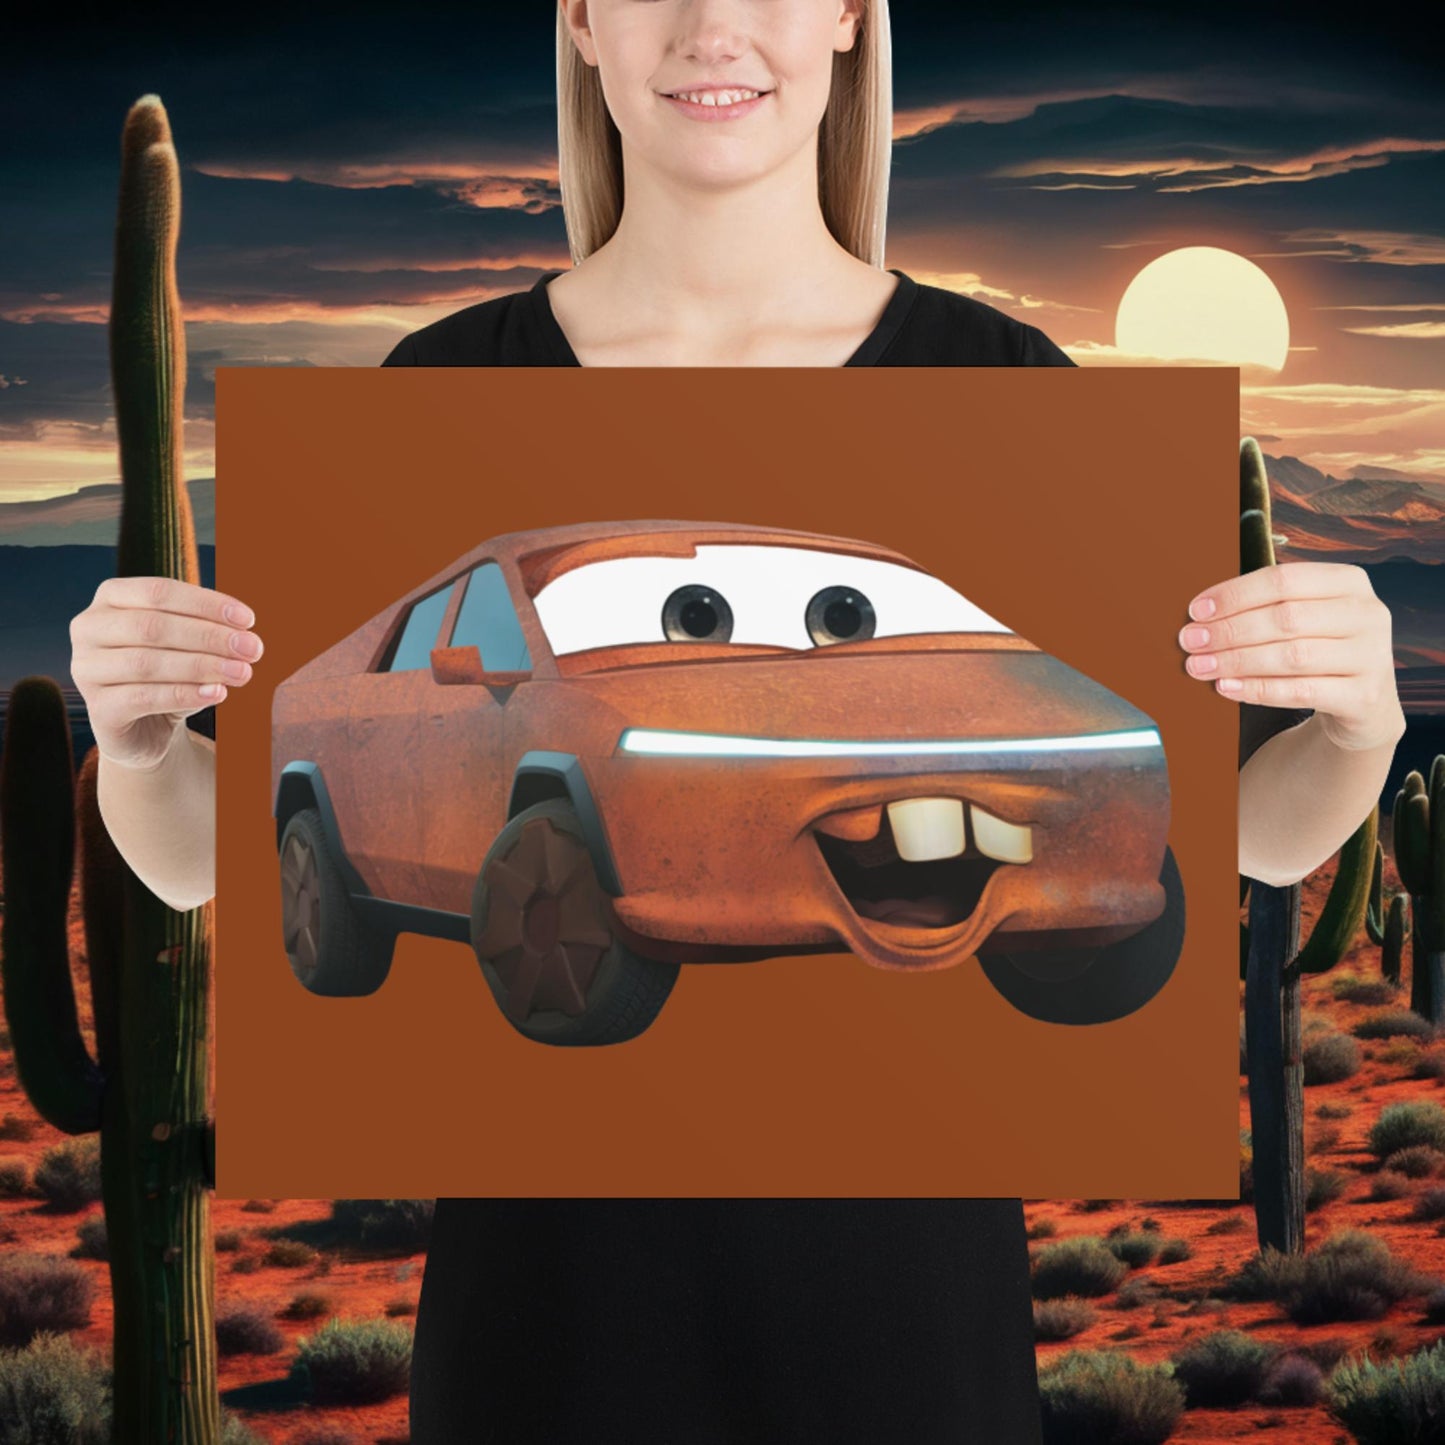 Rusty Tesla Cybertruck Elon Musk Cars Movie Tow Mater Poster Next Cult Brand